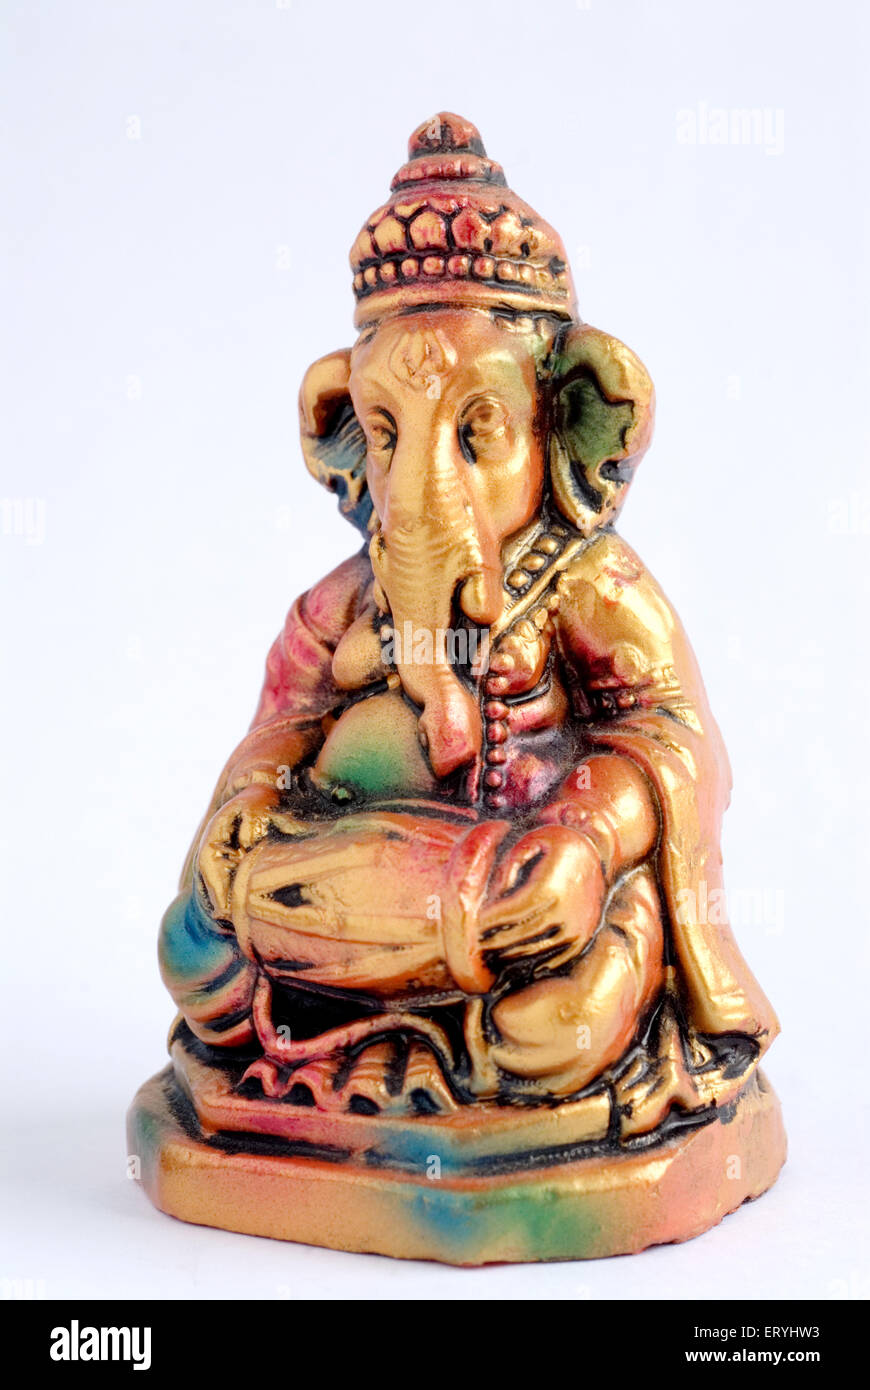 Colourful statue of lord Ganesha elephant headed god playing mridungam ...